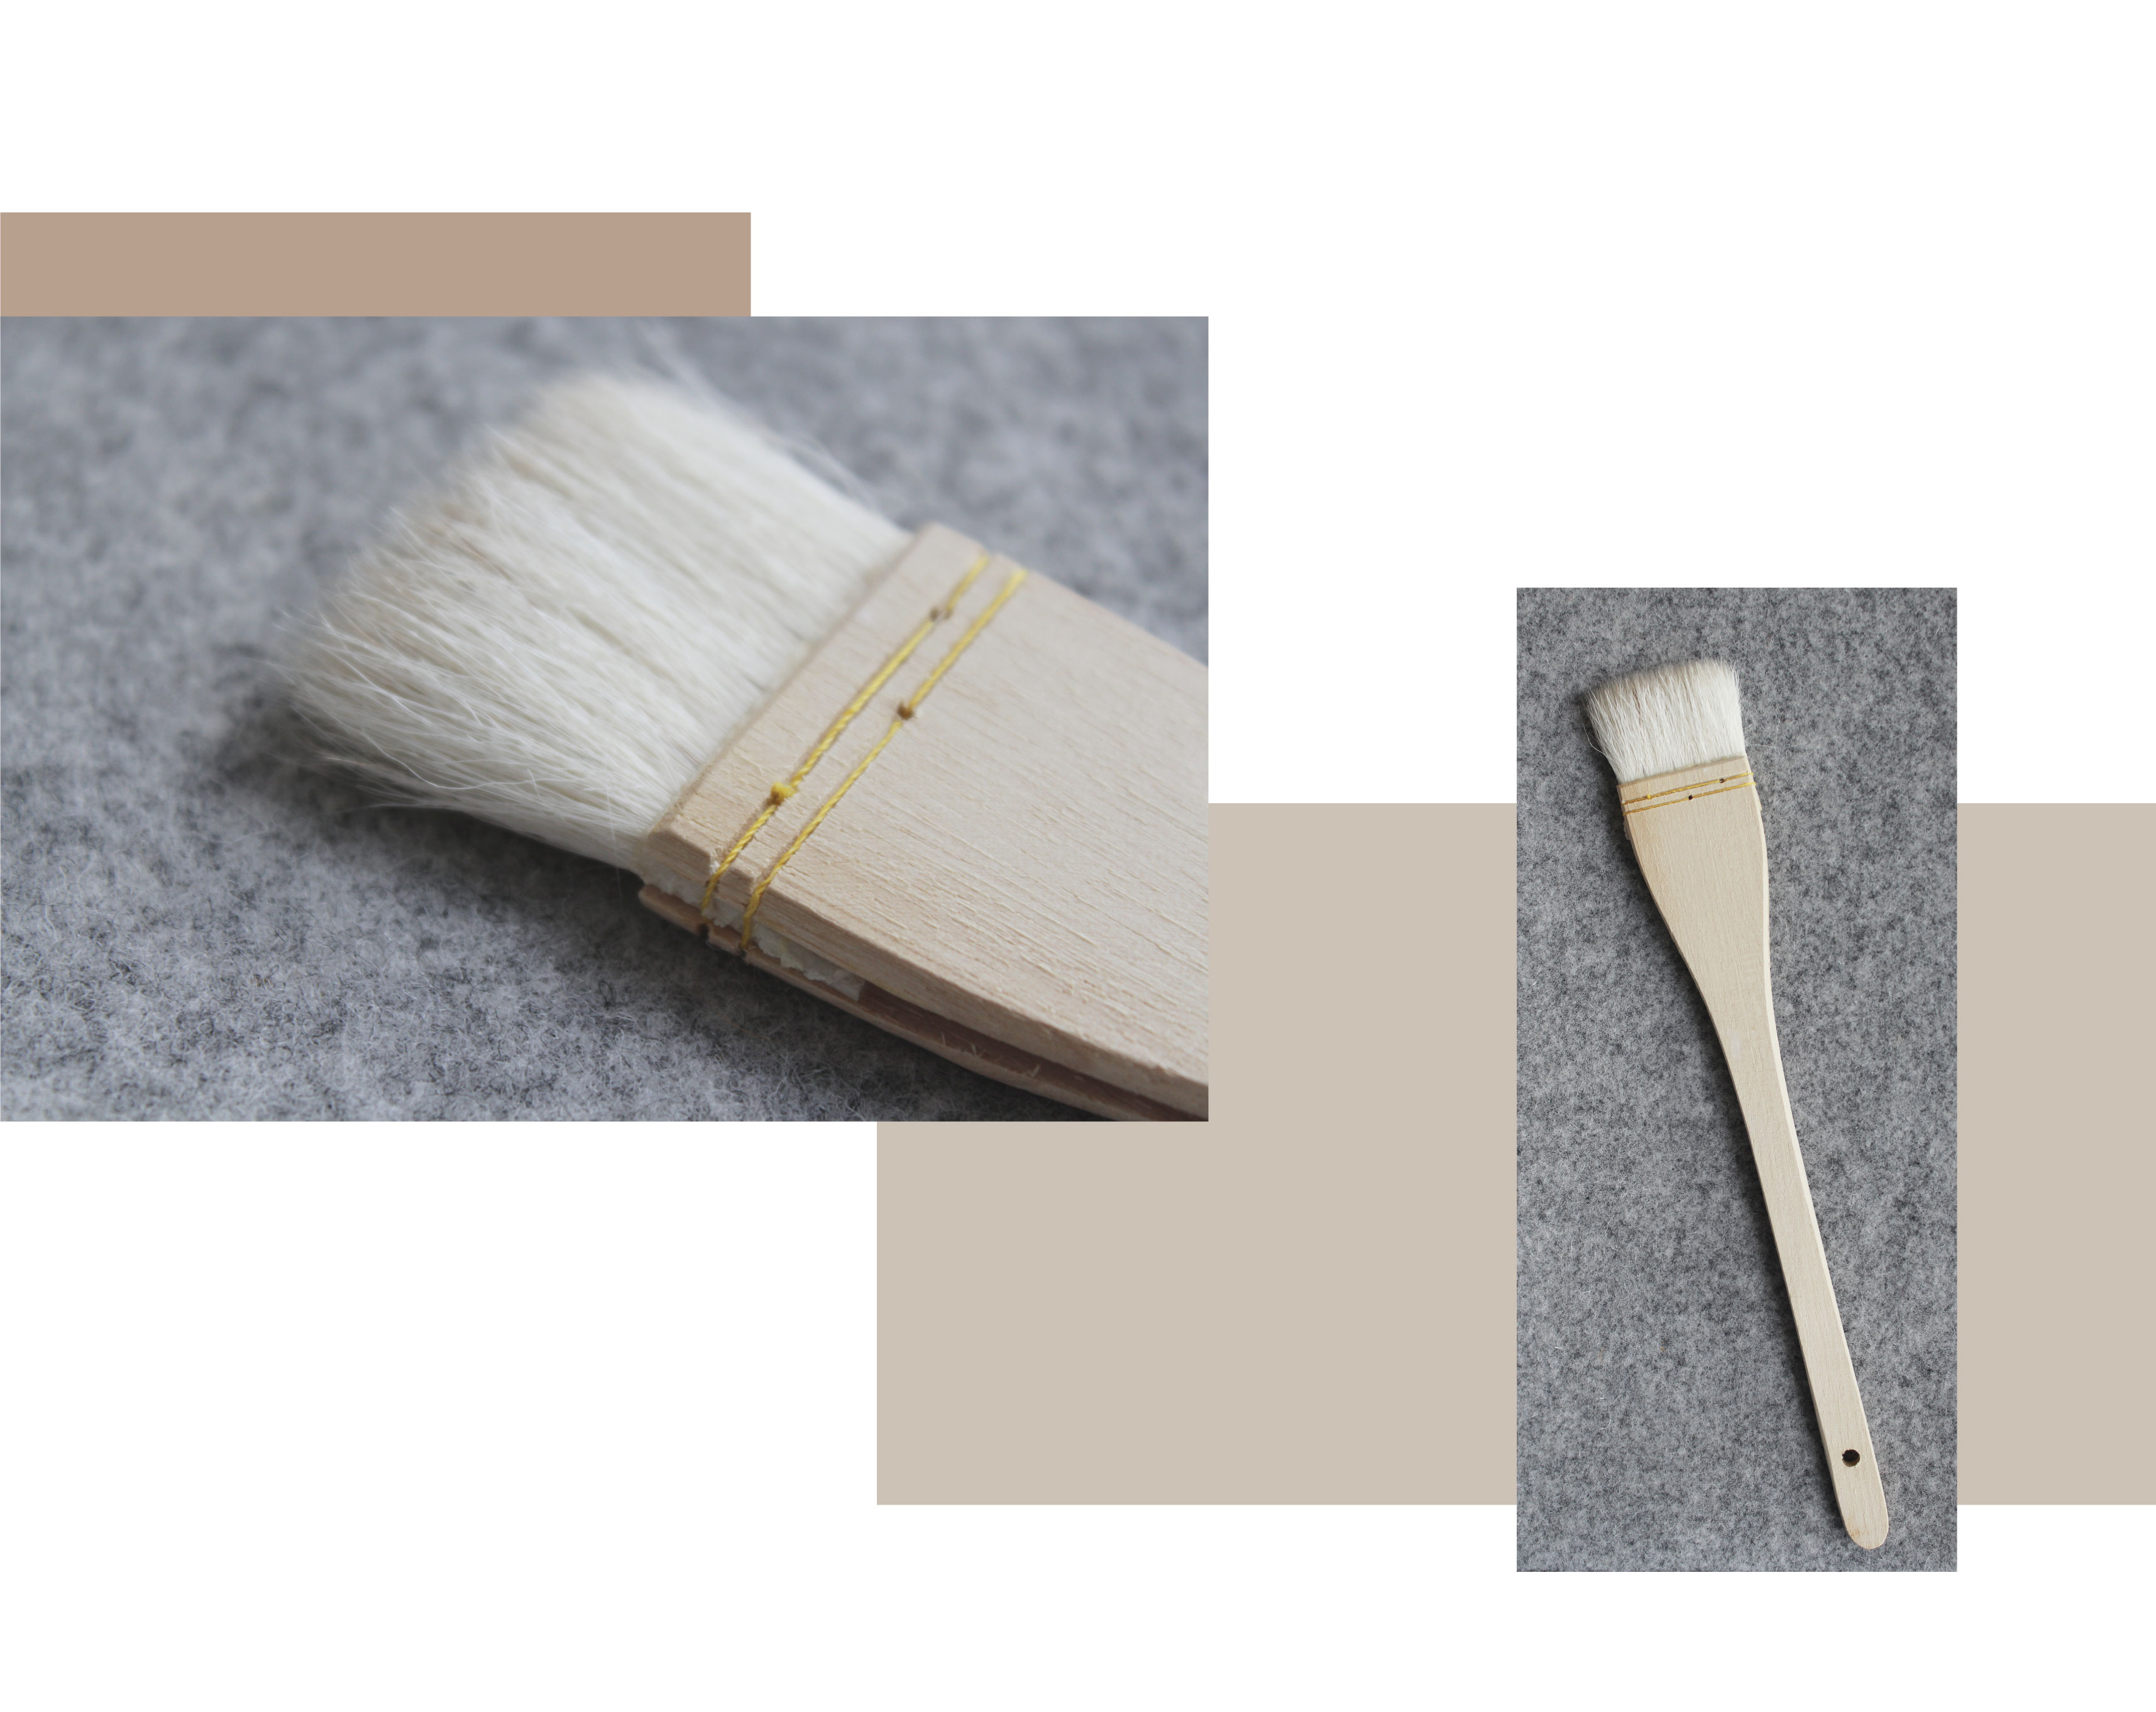 dos imágenes, una con un primer plano de un pincel de esmalte de merluza sobre un fondo gris. El segundo muestra el cepillo completo de merluza. Mango de madera, costuras, cepillo fibroso.